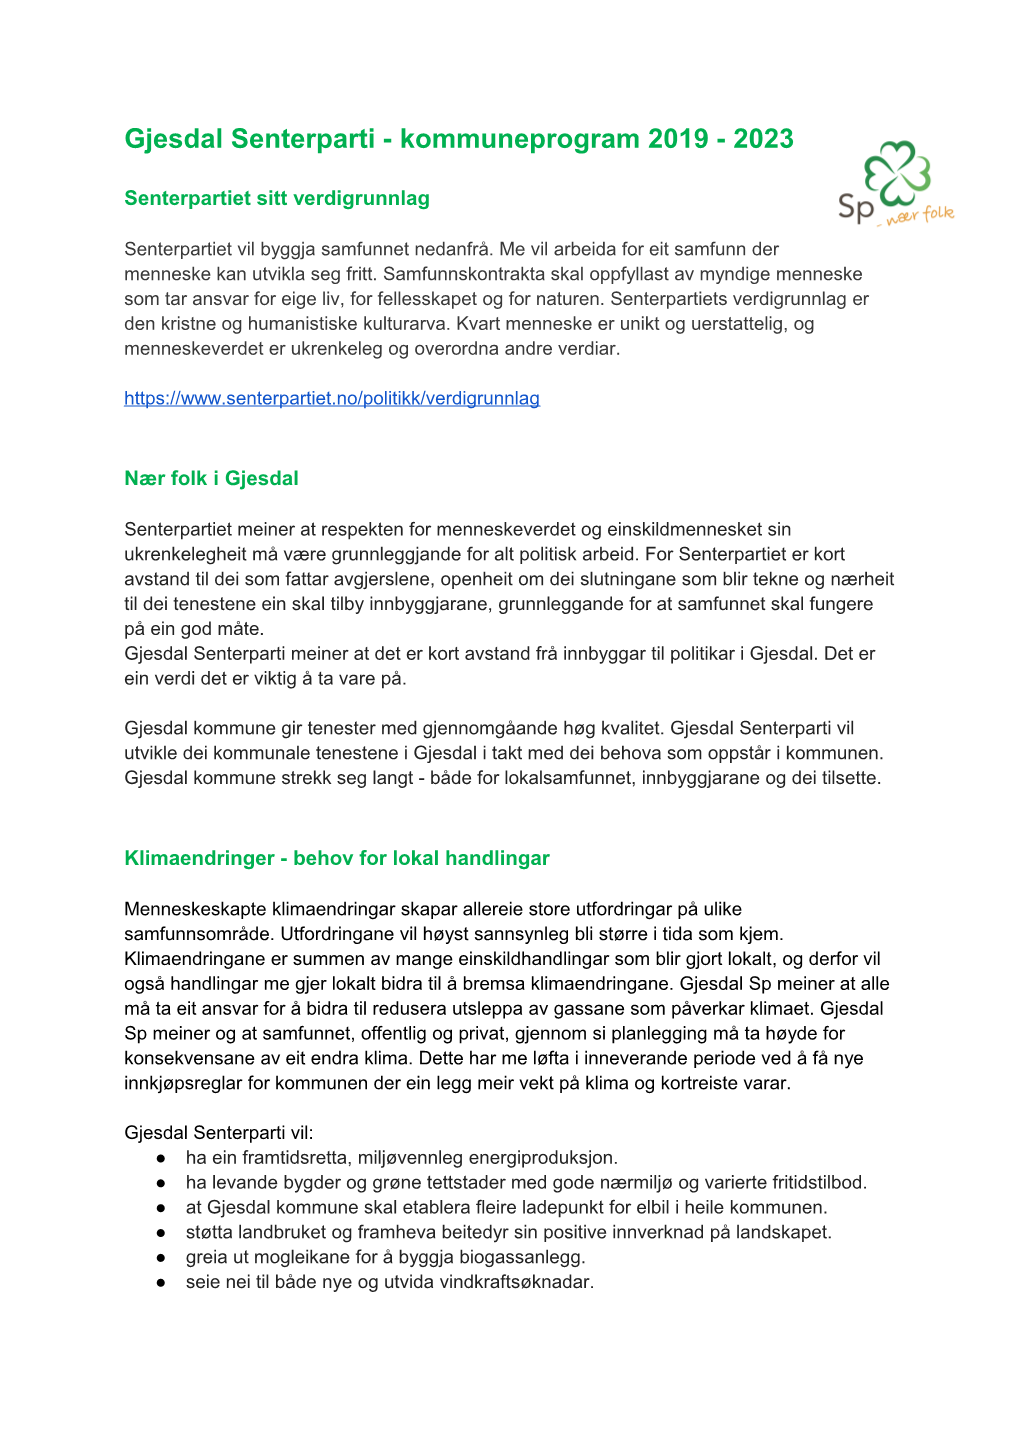 Gjesdal Senterparti - Kommuneprogram 2019 - 2023